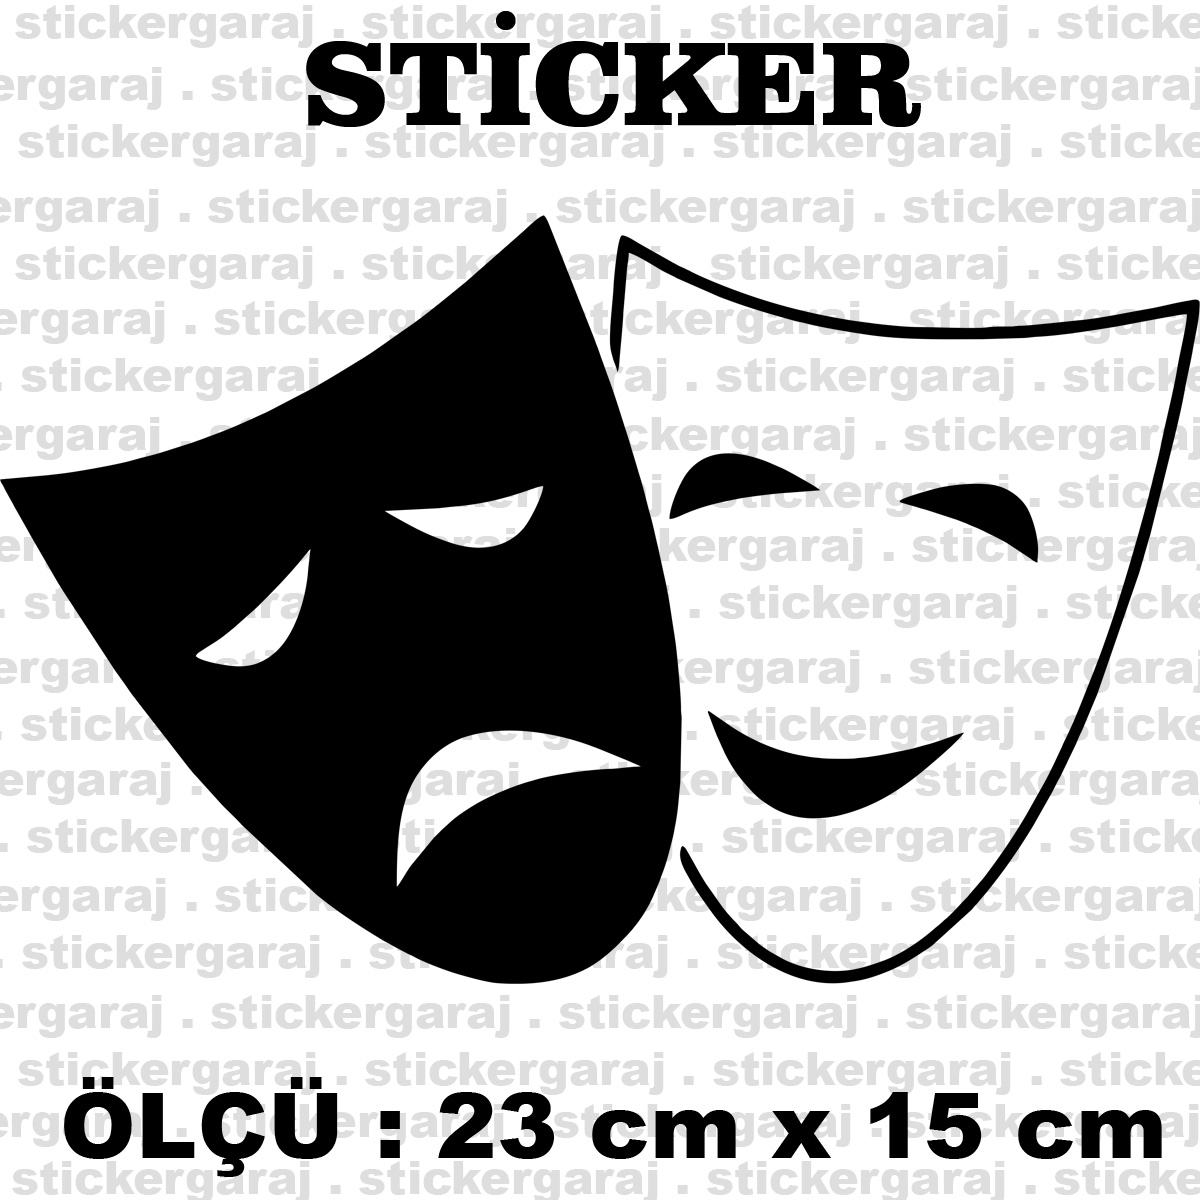 yuz3.cdr 23 15 - Maske surat sticker